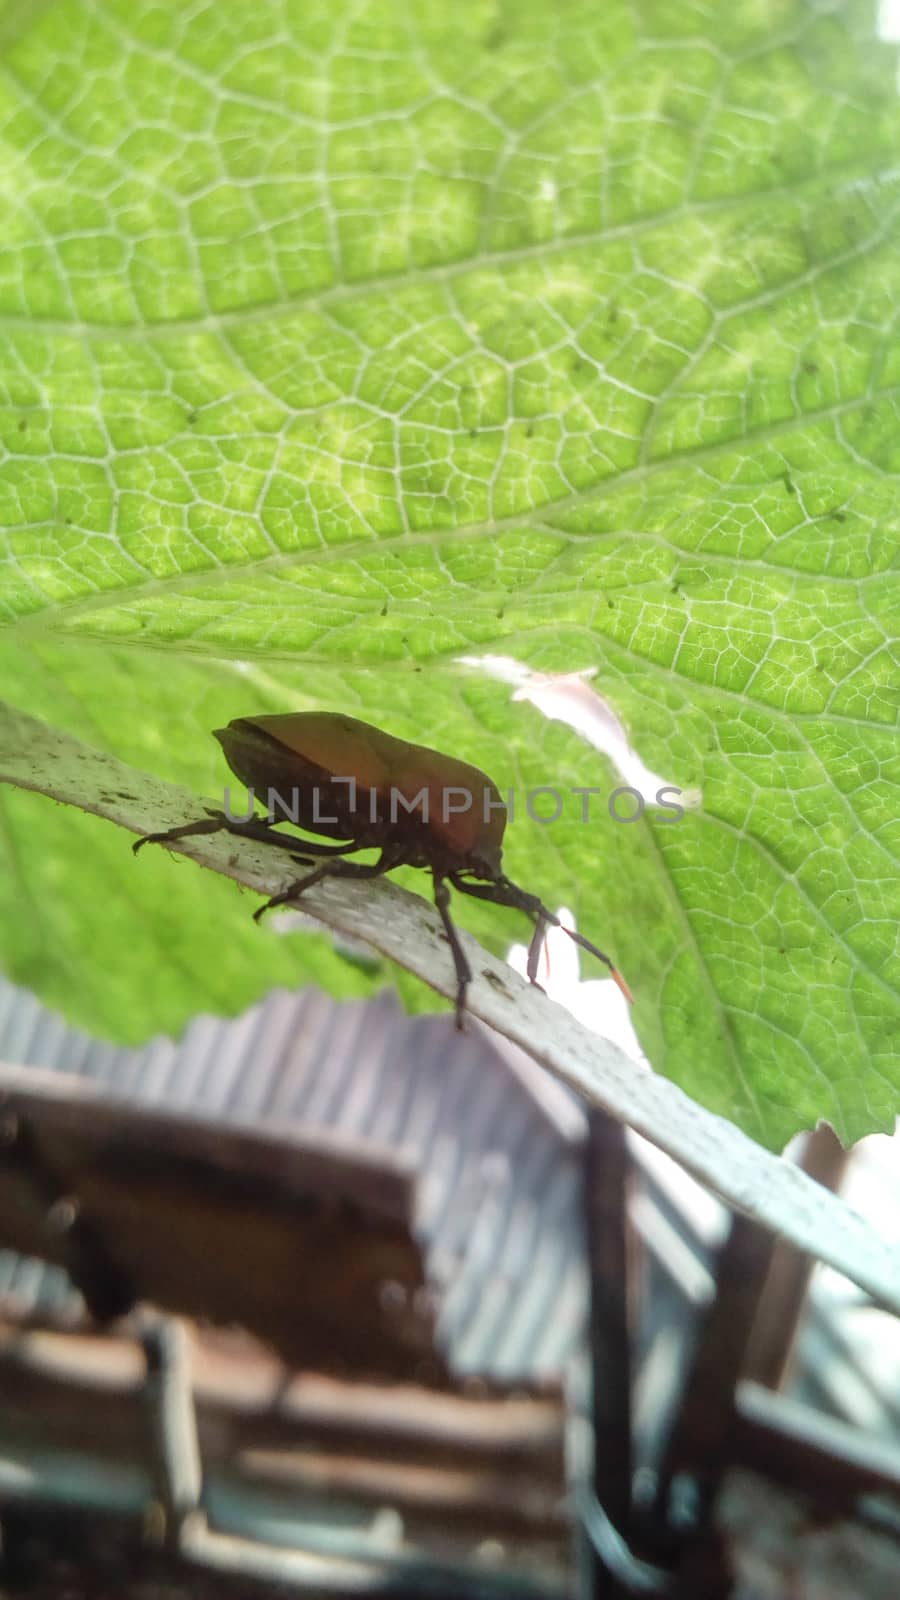 brouwn bug on a green leaf by jahidul2358